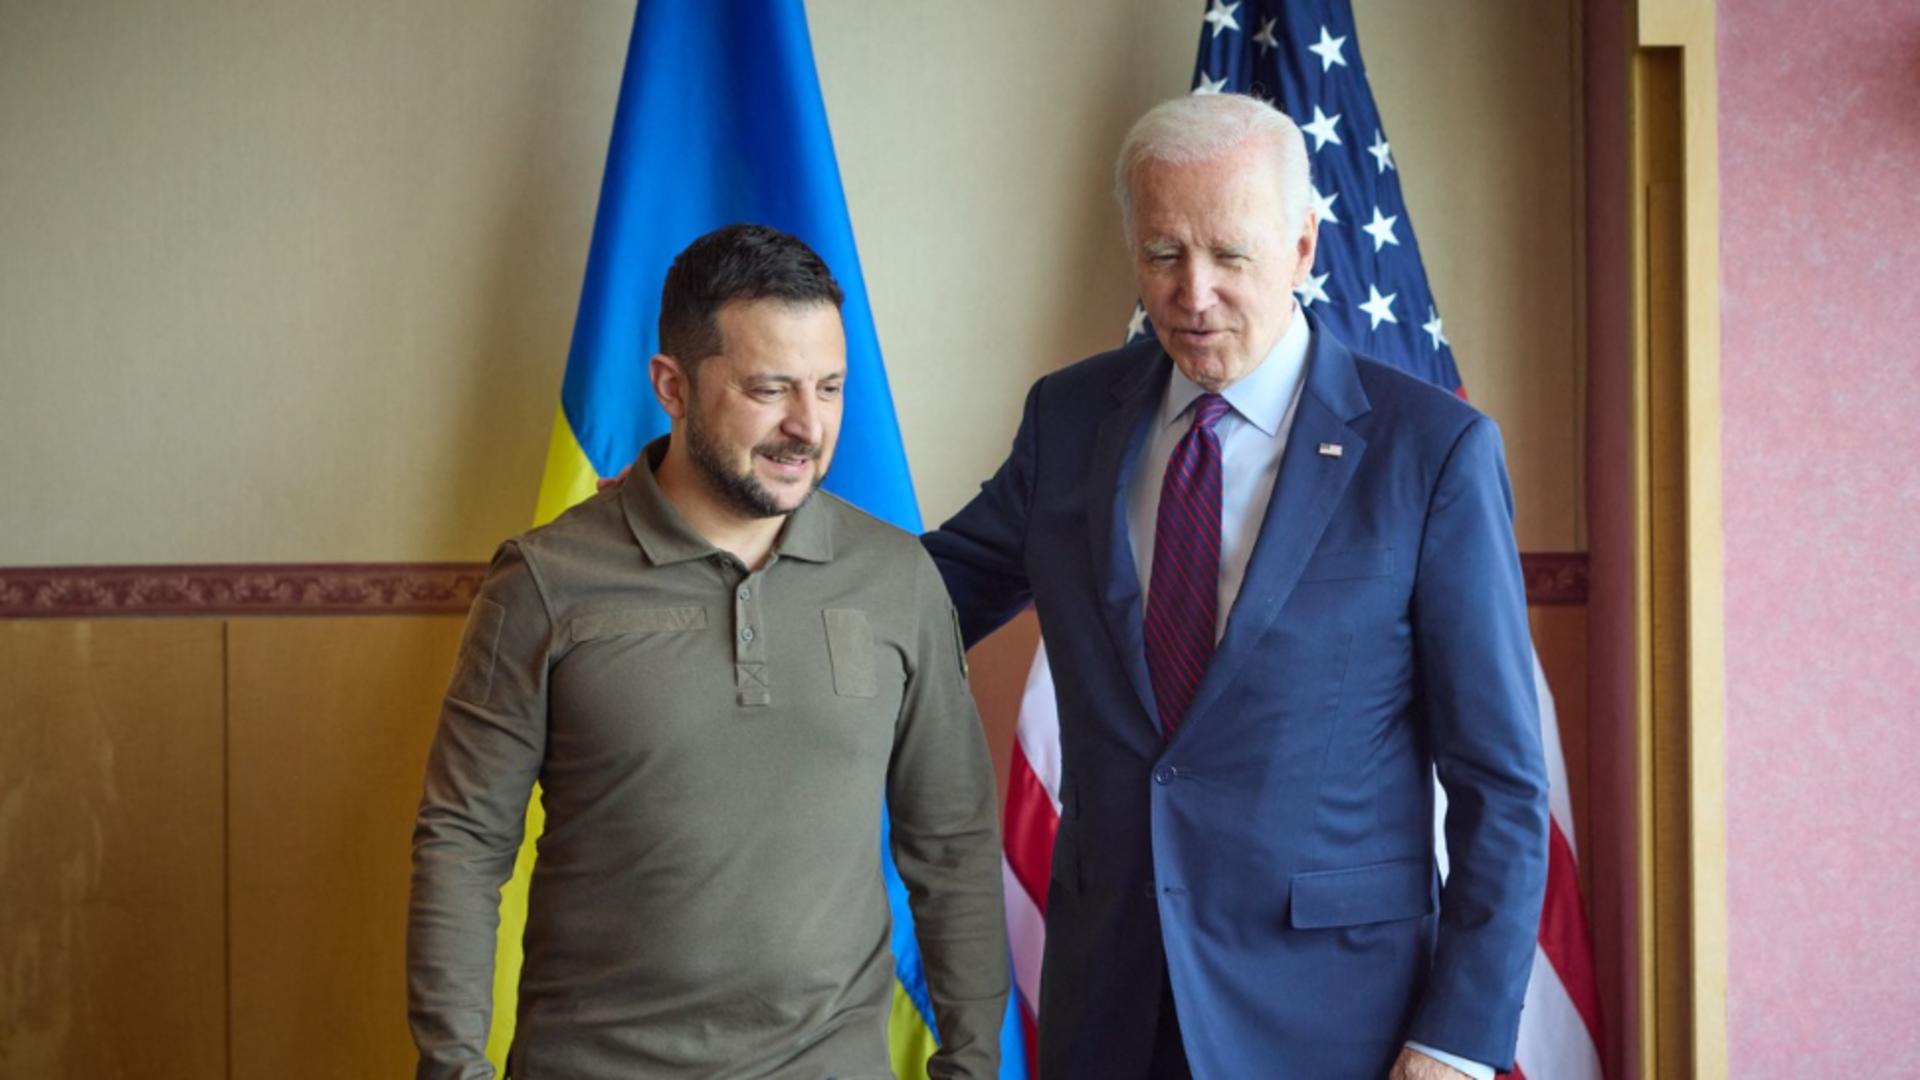 Război în Ucraina, ziua 783: Biden presează Congresul să adopte planul său de ajutor pentru Ucraina. Planurile Washingtonului privind activele ruse blocate – LIVE TEXT